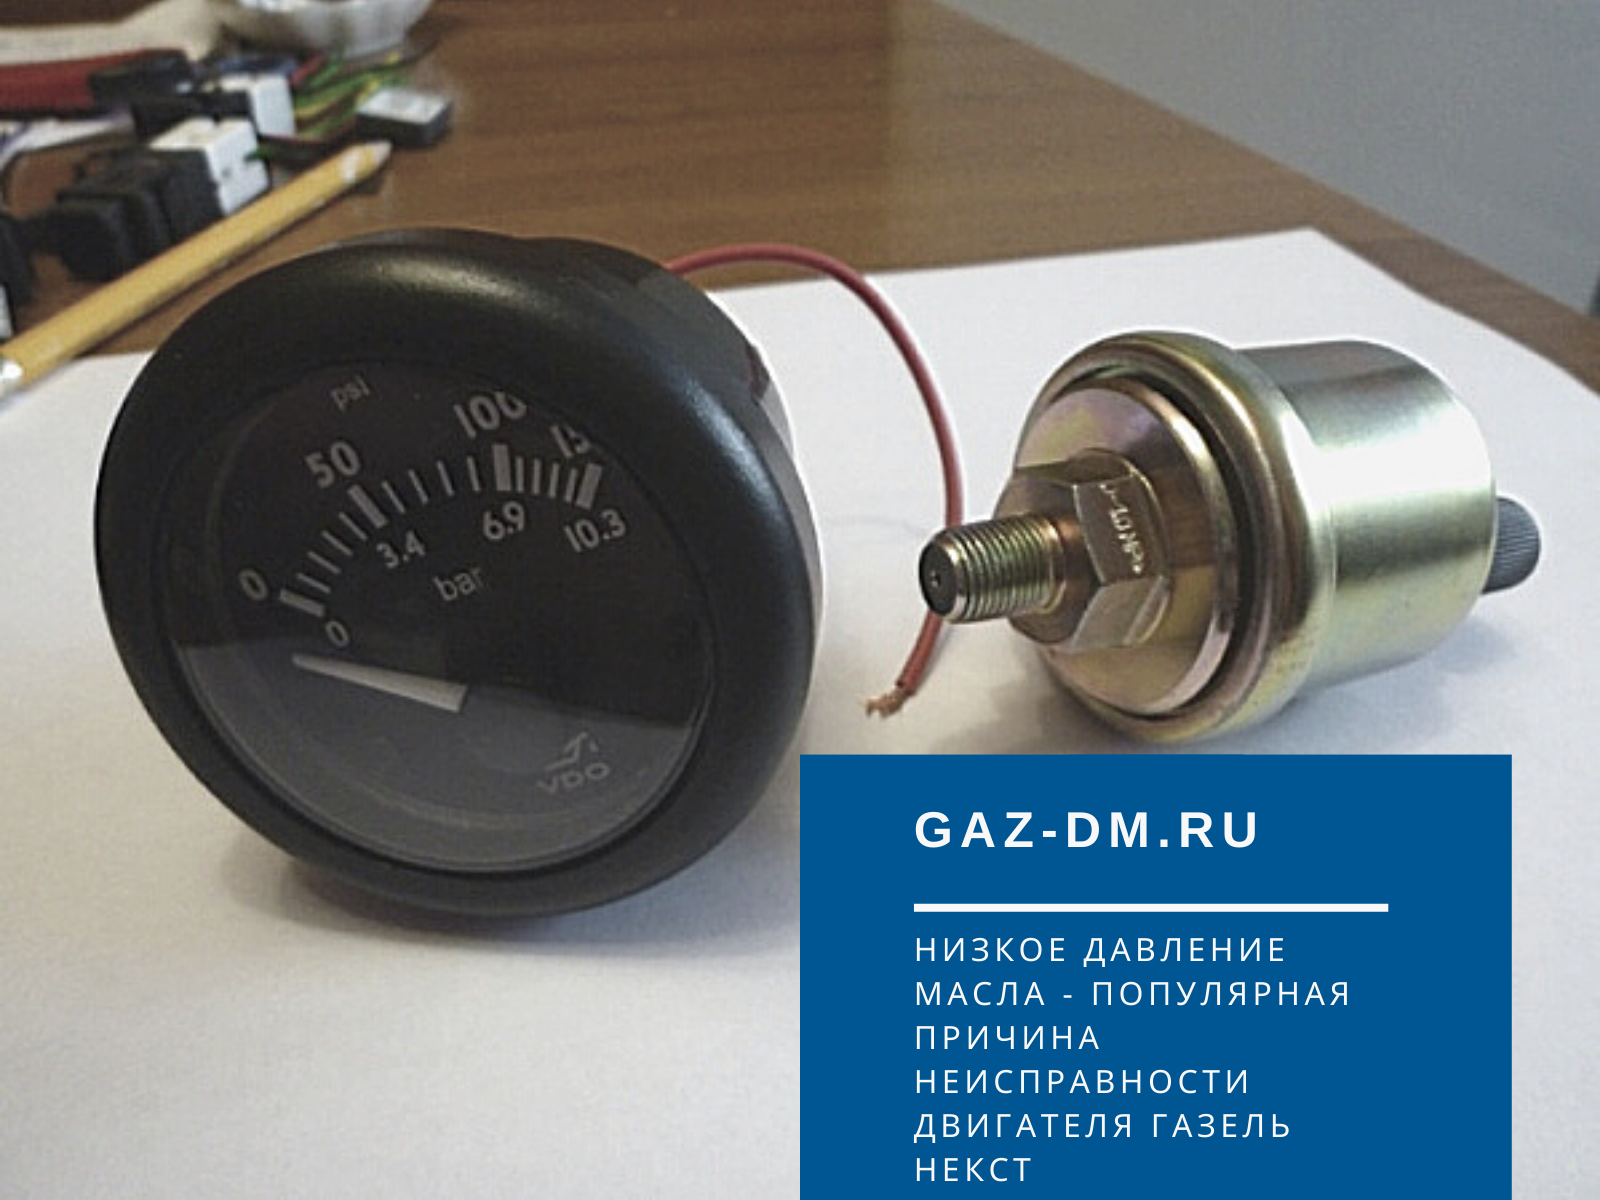 DM gaz ru. Механический давления масла газель